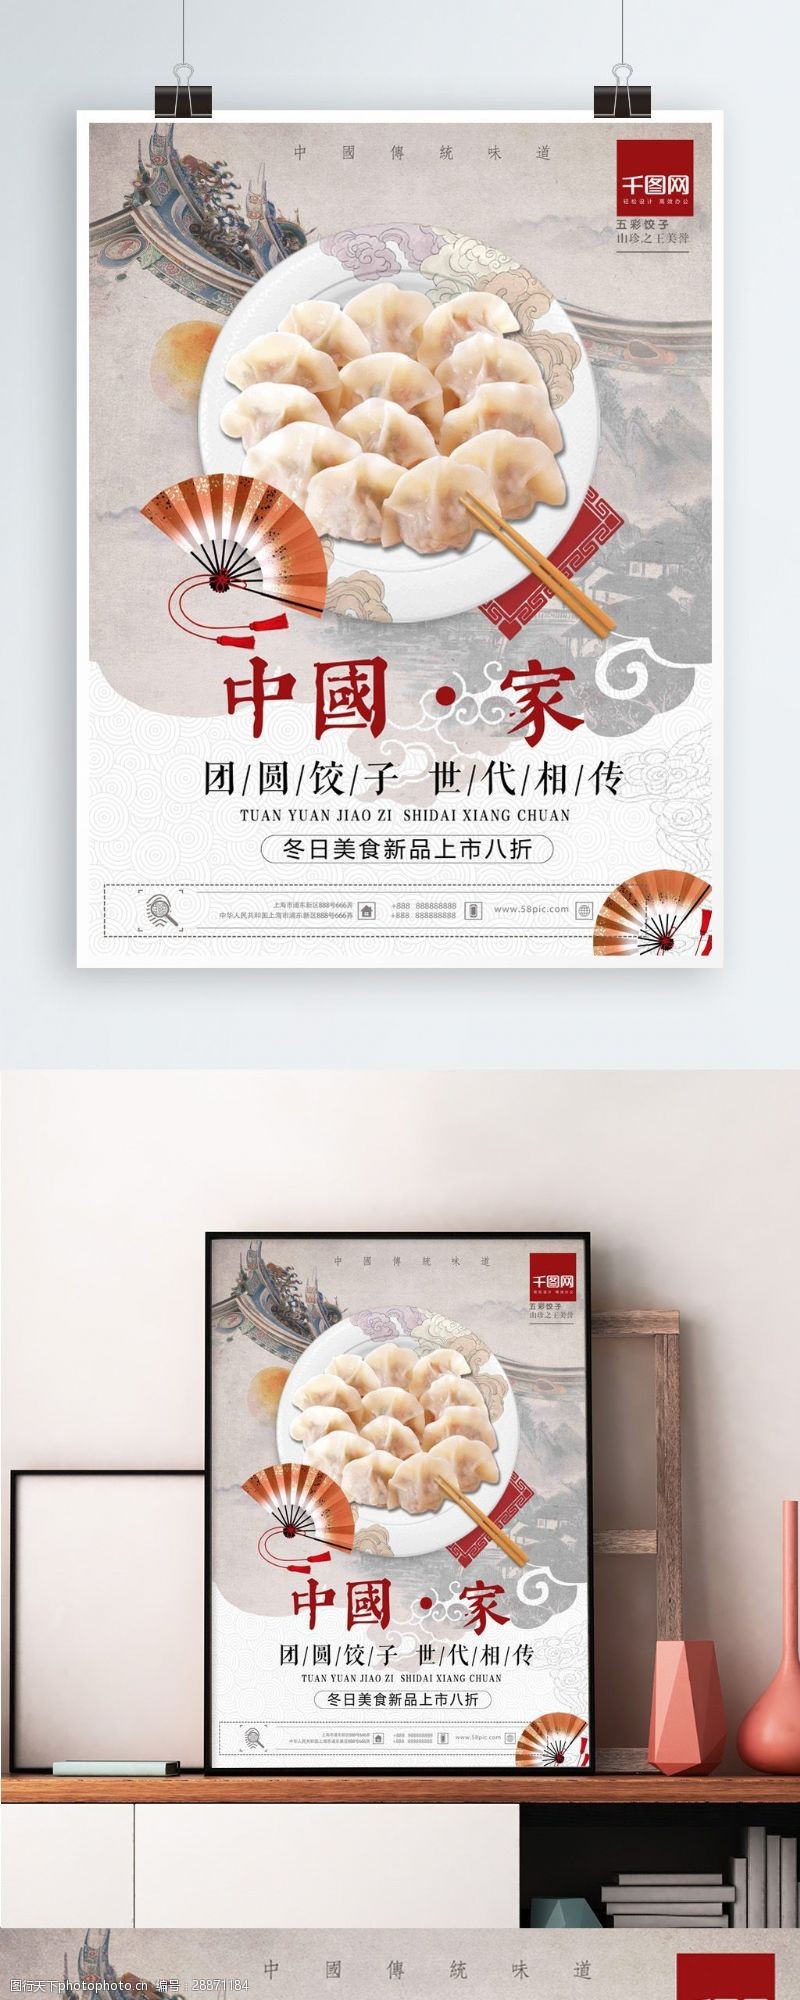 冬季新品上传统大气中国美食冬季饺子新品上市促销海报